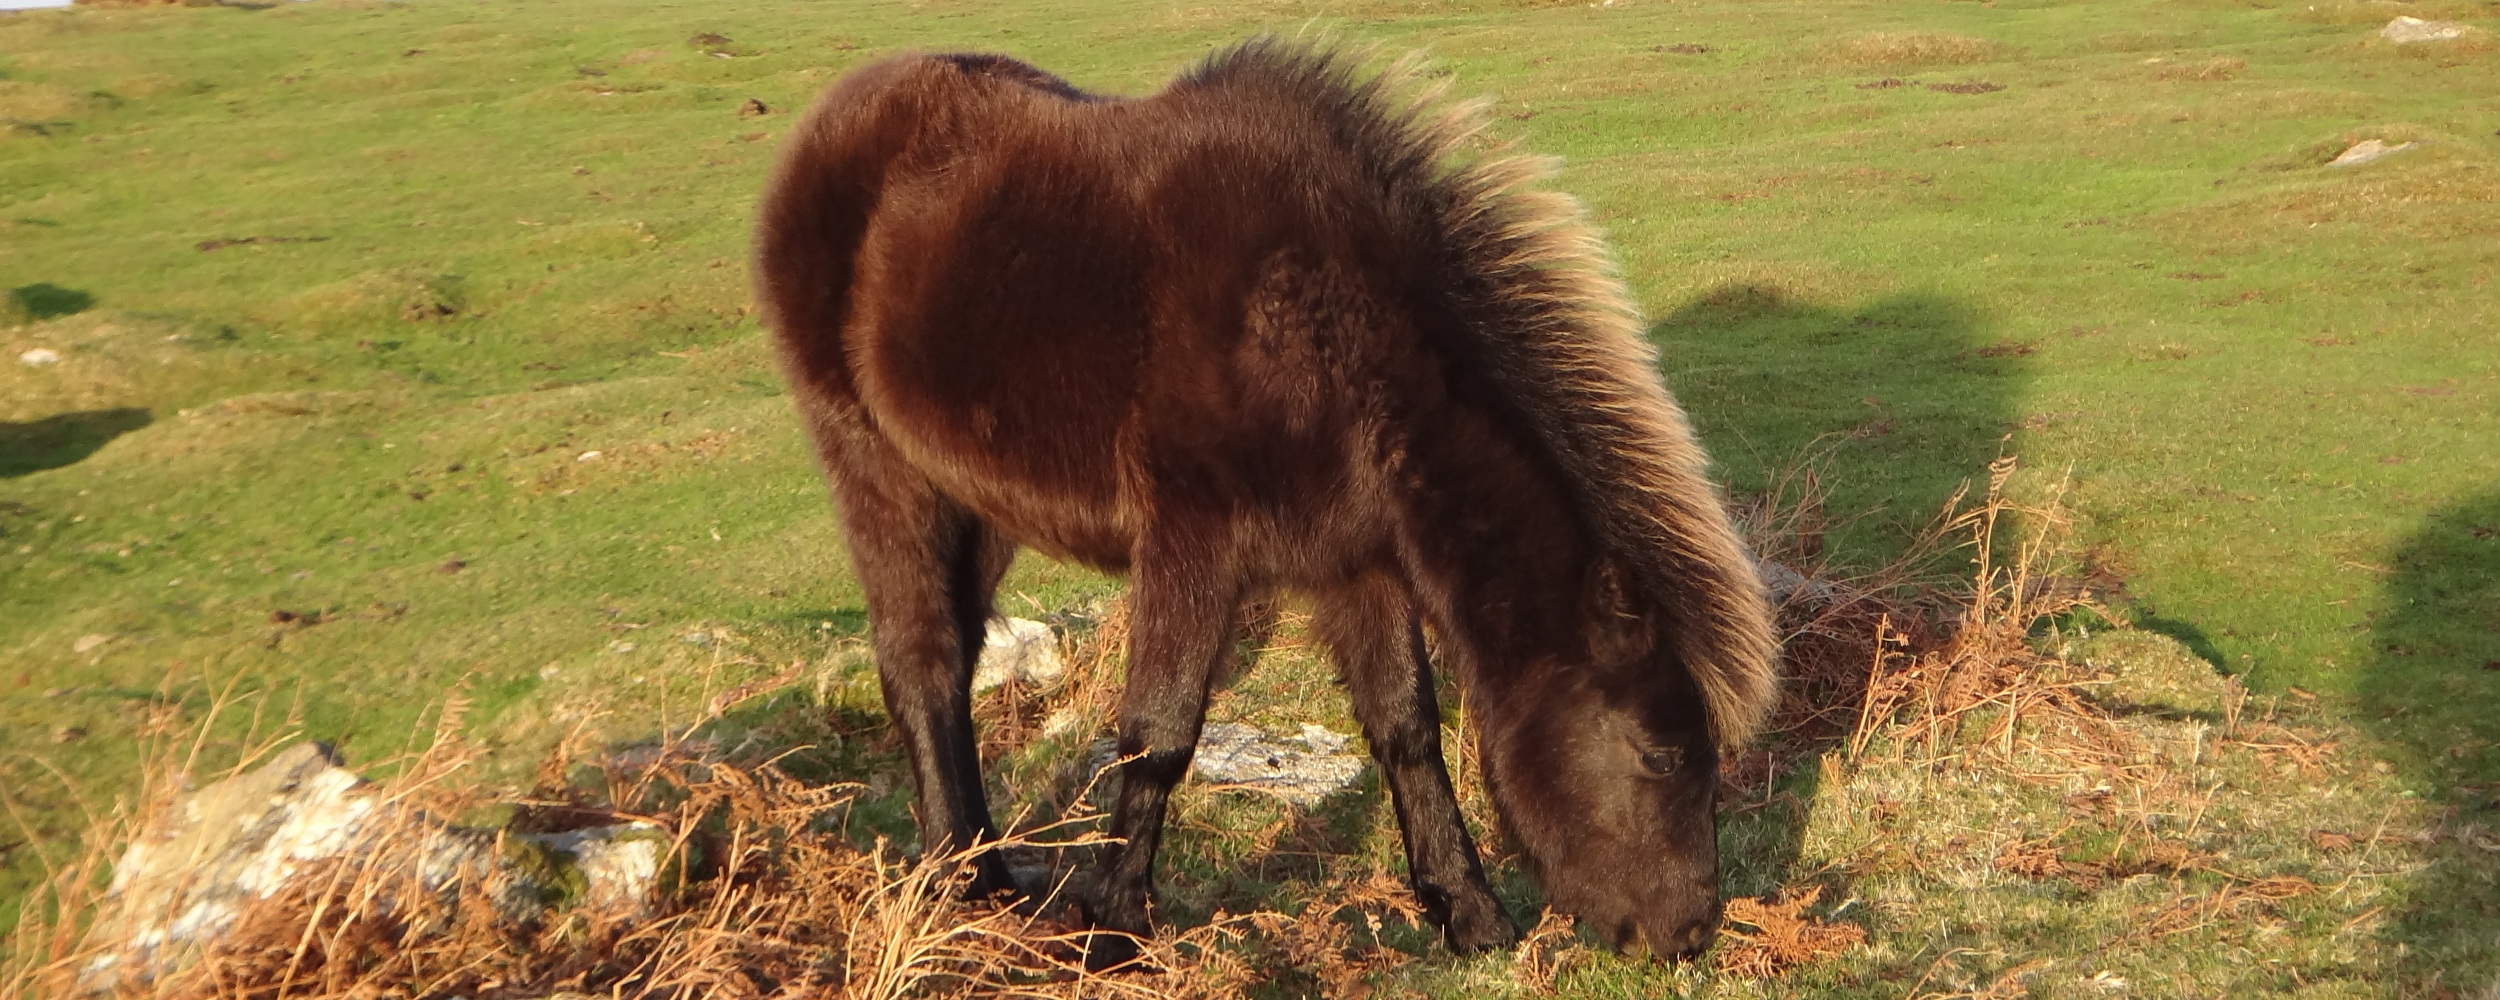 Dartmoor Pony with Winter Coat